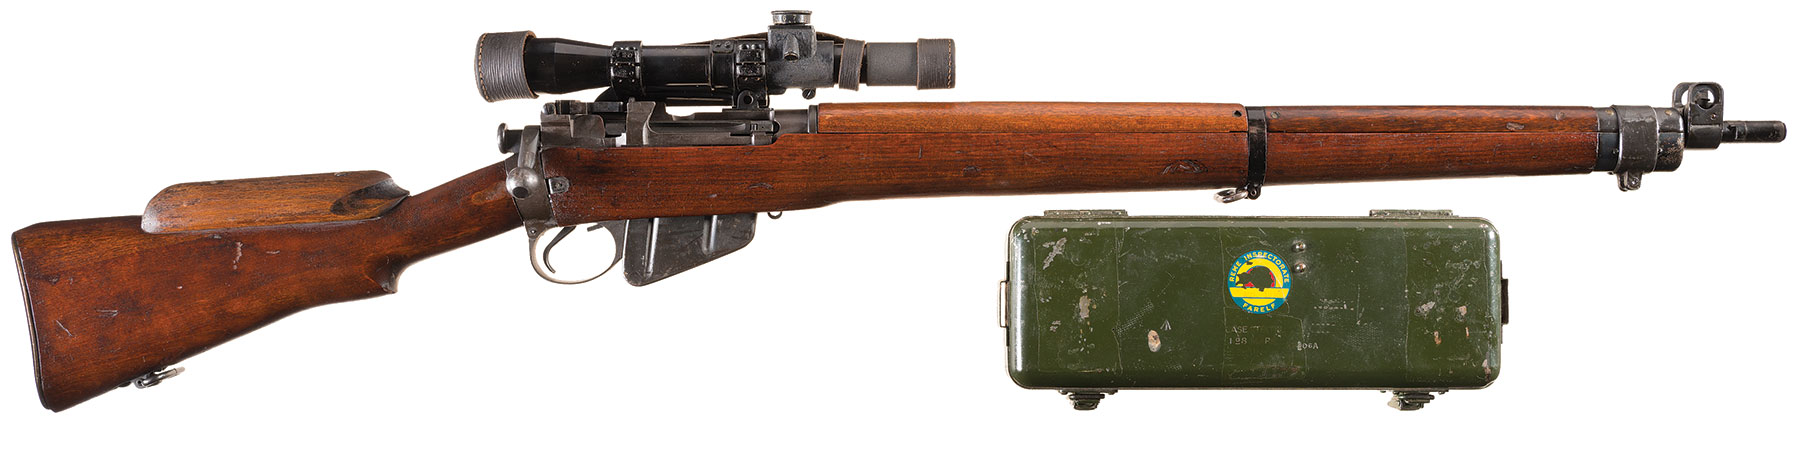 Savage No4 Mk I Enfield Rifle